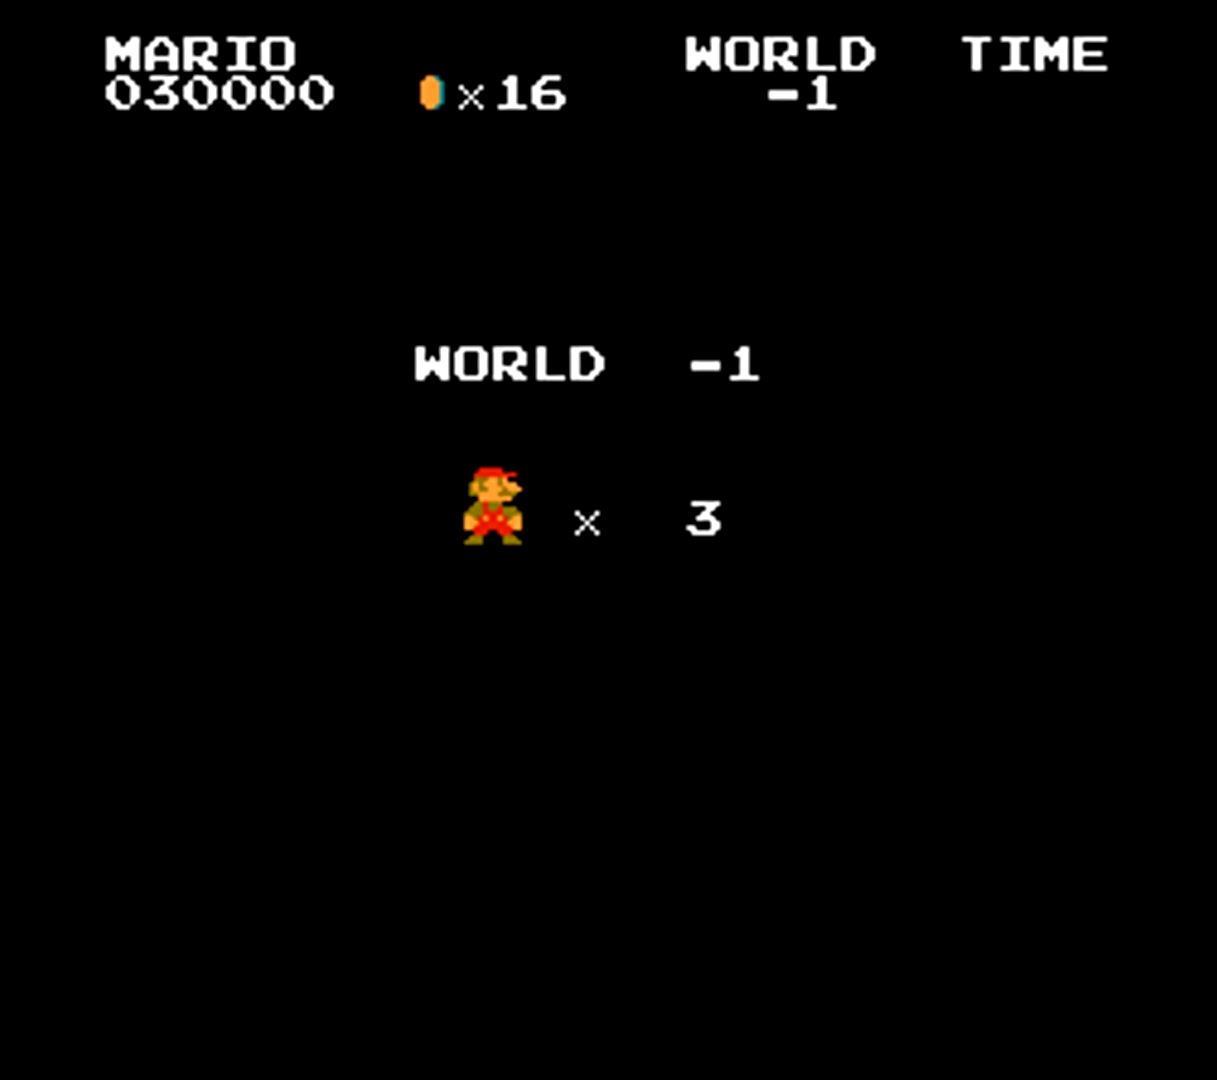 Super Mario Bros. Minus World